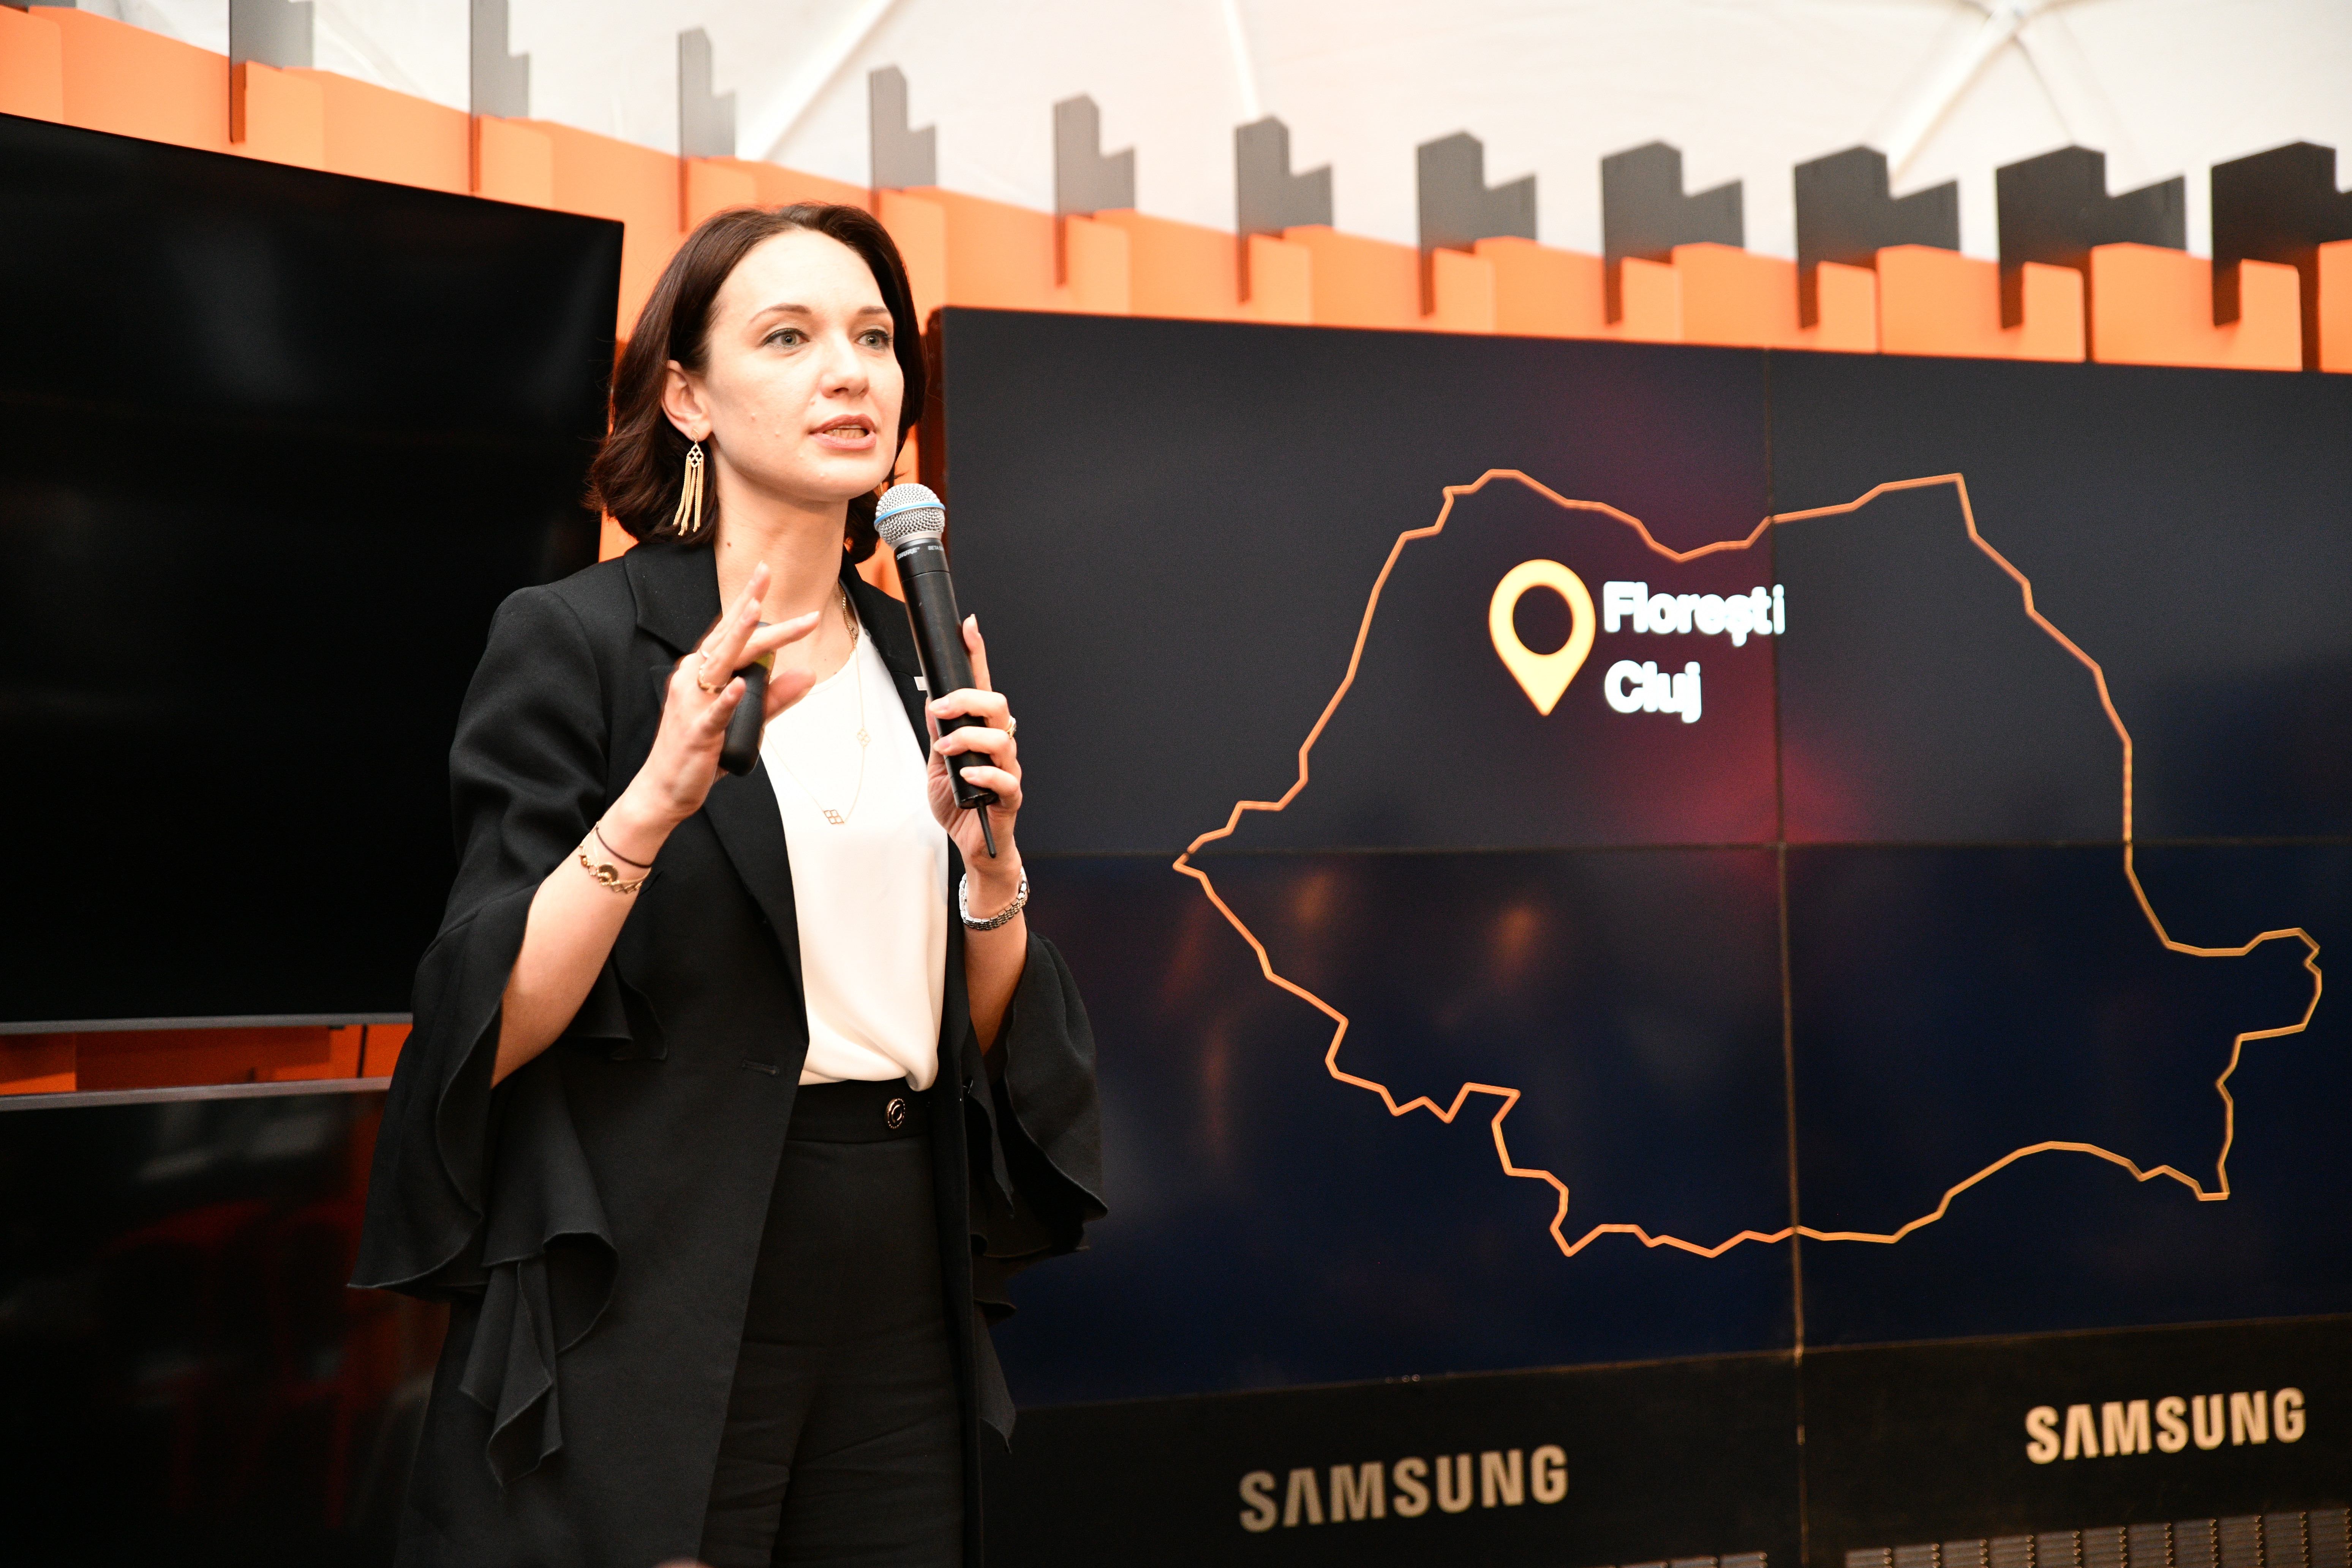 Orange România după teste reale, în premieră europeană, cu tehnologia 5G în judeţul Cluj: putem oferi o experienţă comparabilă cu fibra optică însă este nevoie de investiţii masive